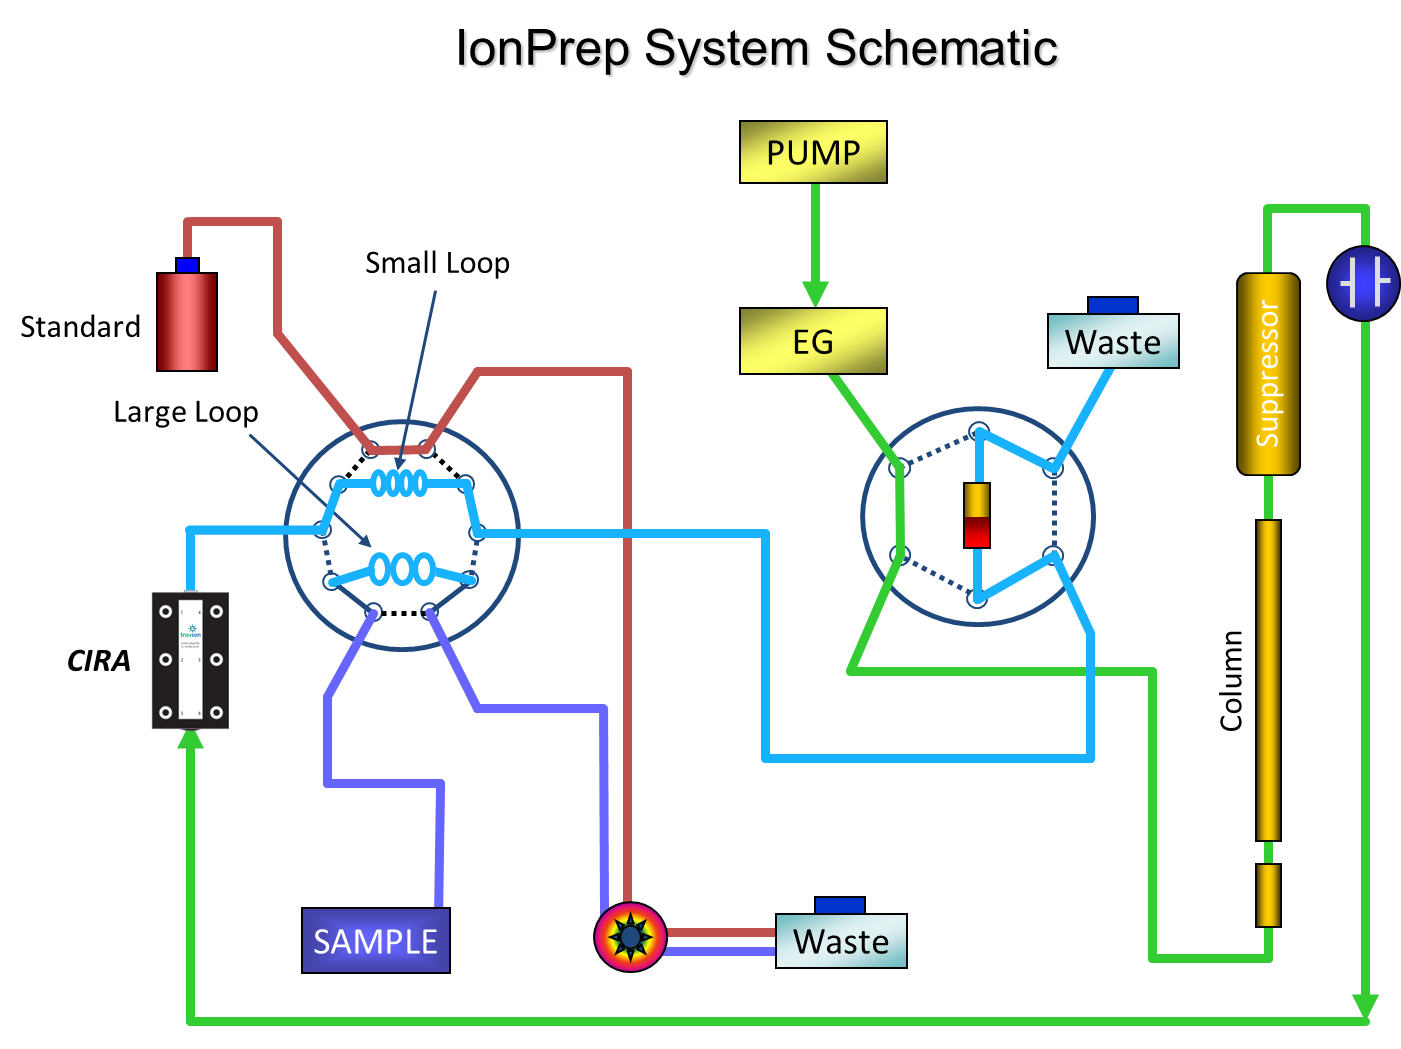 IonPrep System Schematic